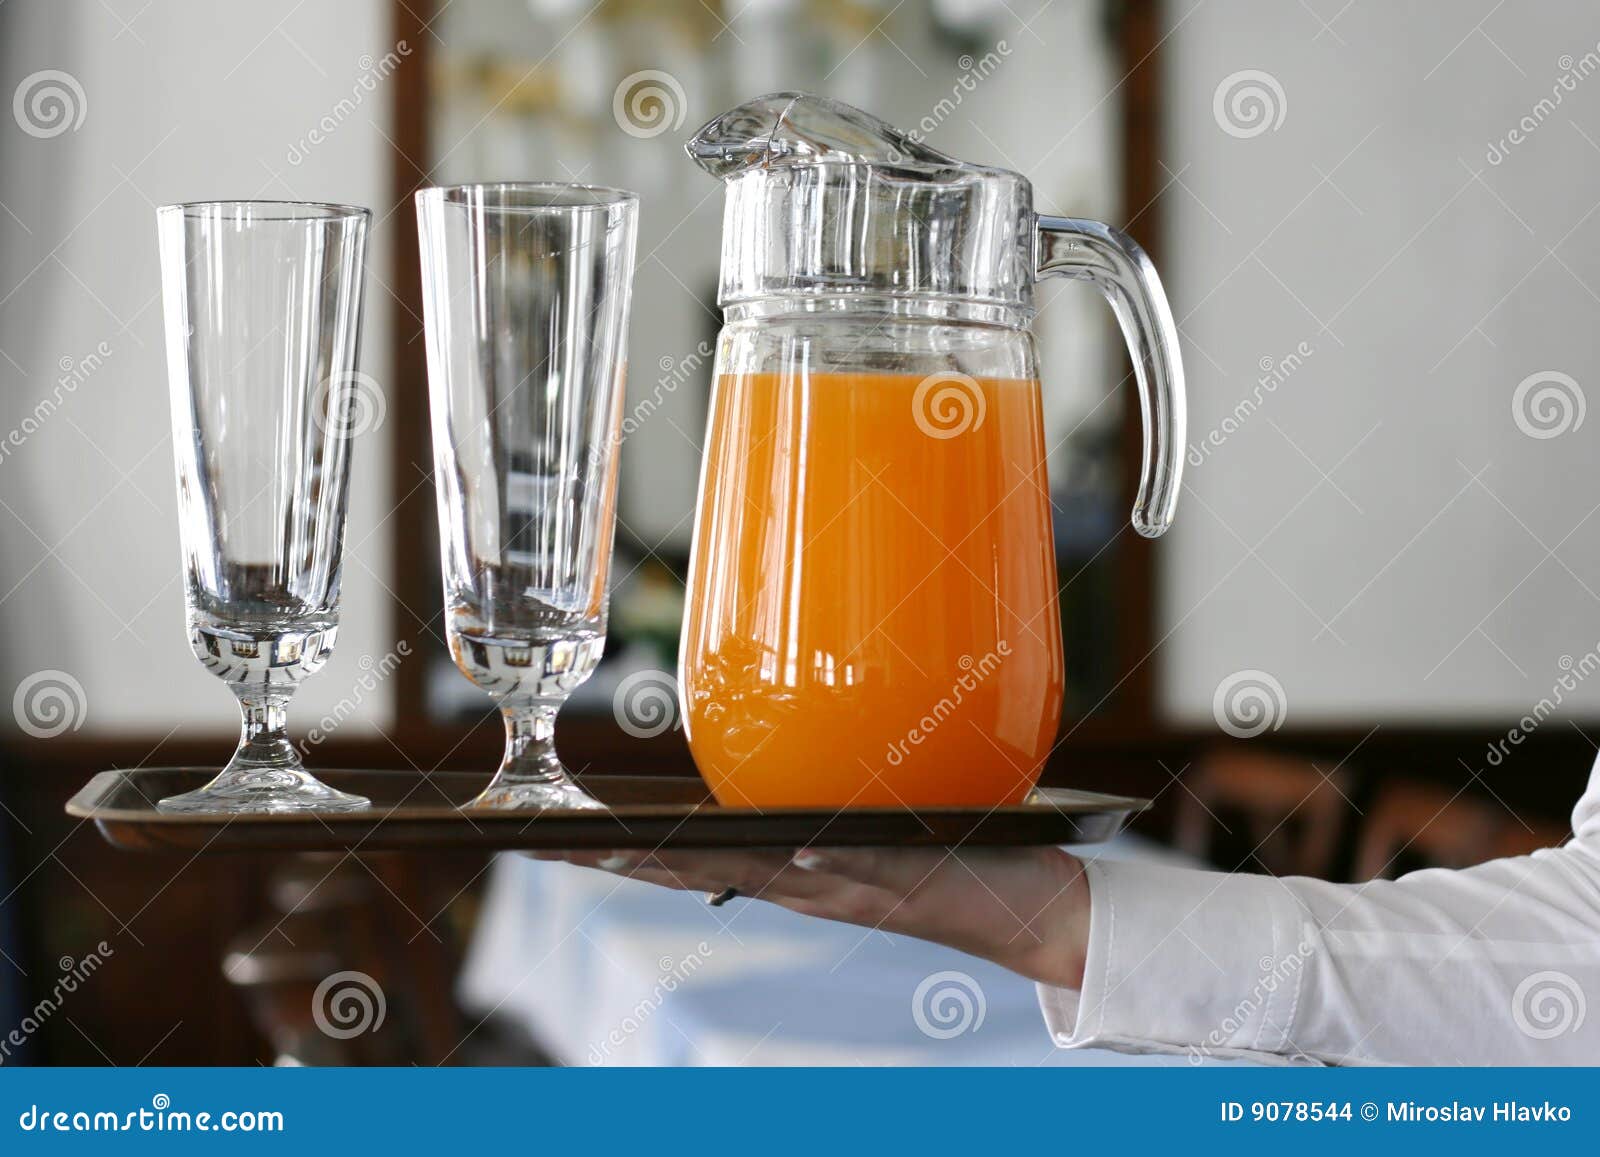 Serving juice stock photo. Image of finger, drink, serve ...